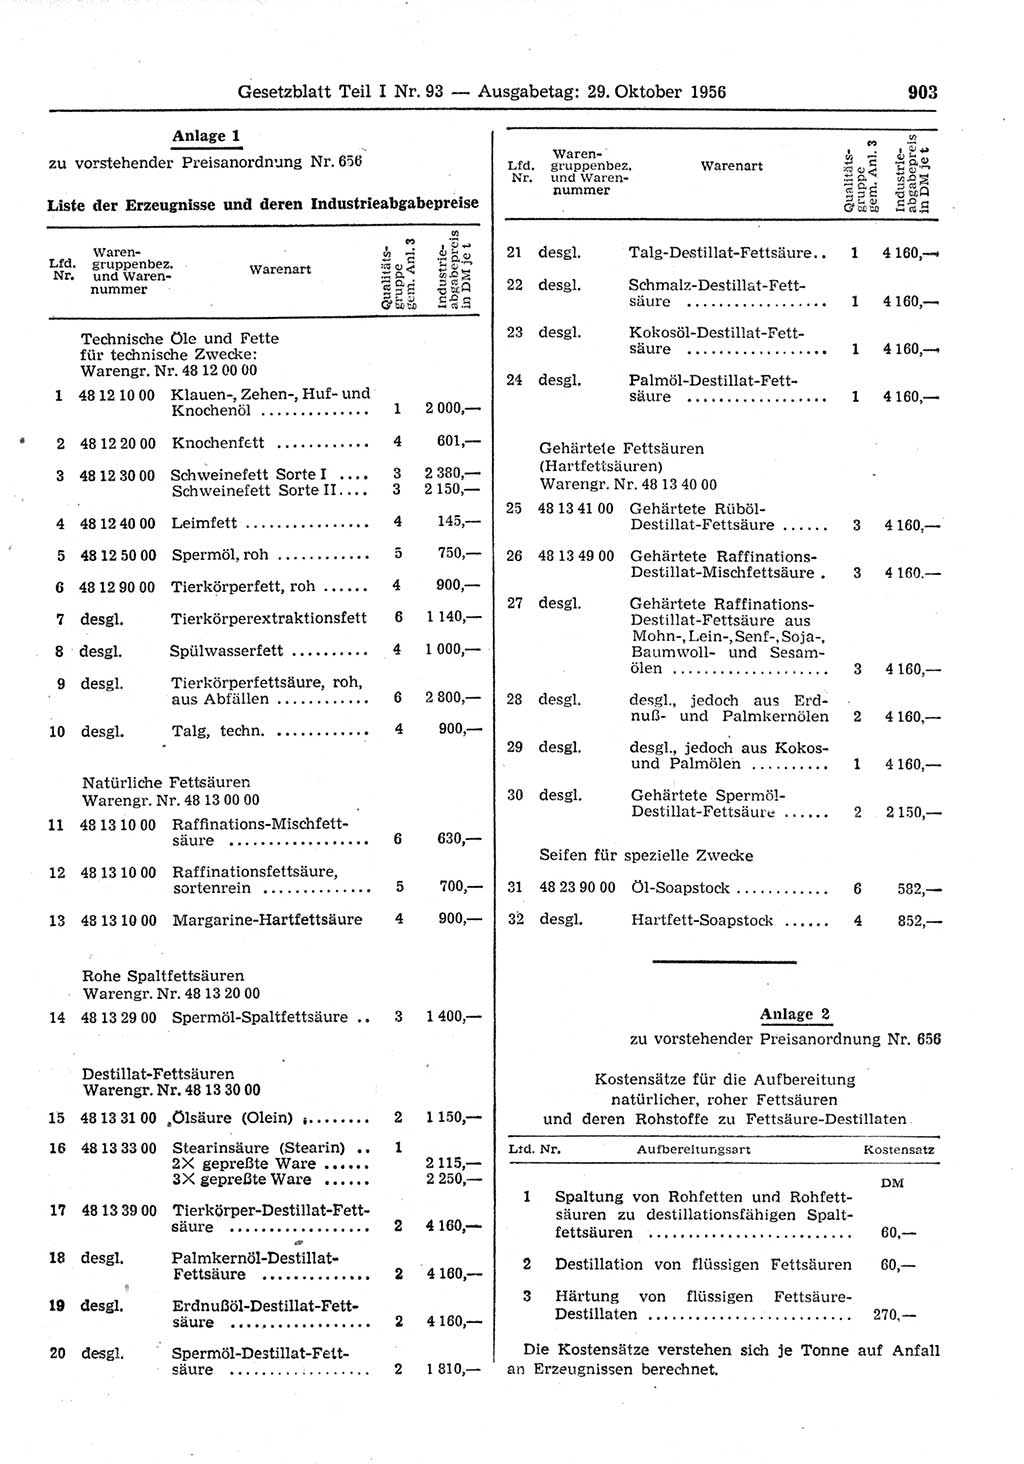 Gesetzblatt (GBl.) der Deutschen Demokratischen Republik (DDR) Teil Ⅰ 1956, Seite 903 (GBl. DDR Ⅰ 1956, S. 903)